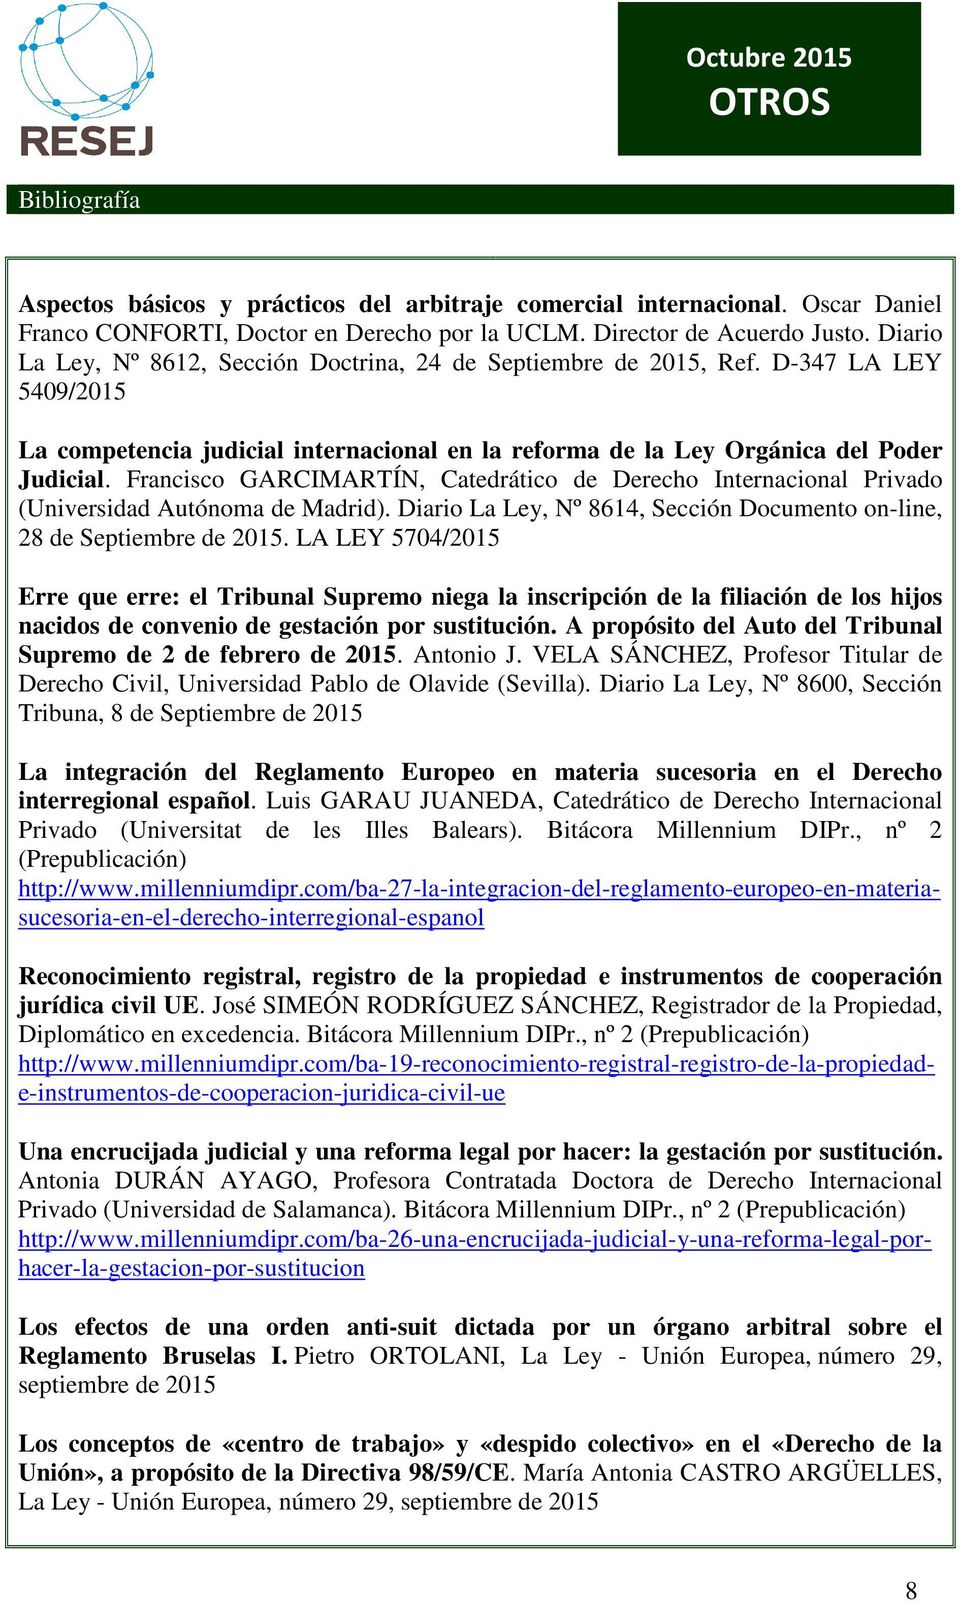 Francisco GARCIMARTÍN, Catedrático de Derecho Internacional Privado (Universidad Autónoma de Madrid). Diario La Ley, Nº 8614, Sección Documento on-line, 28 de Septiembre de 2015.